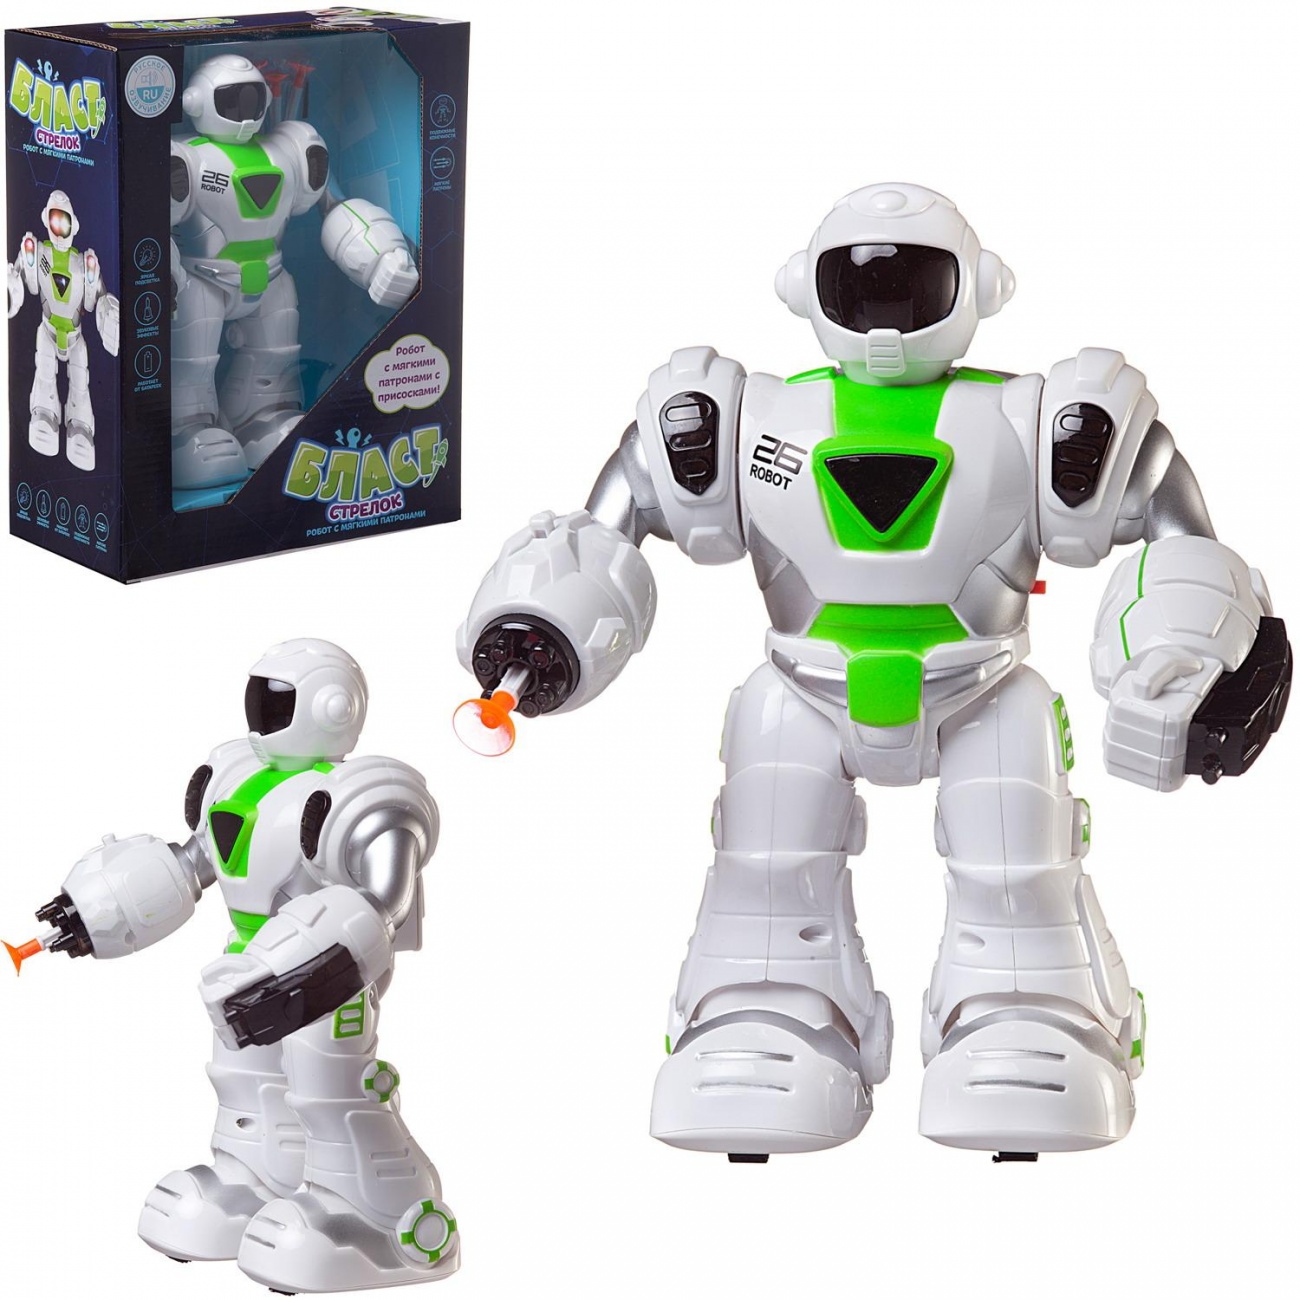 Робот Junfa Бласт Стрелок электромеханический свет/звук бело-зеленый ZY1214875/зеленый